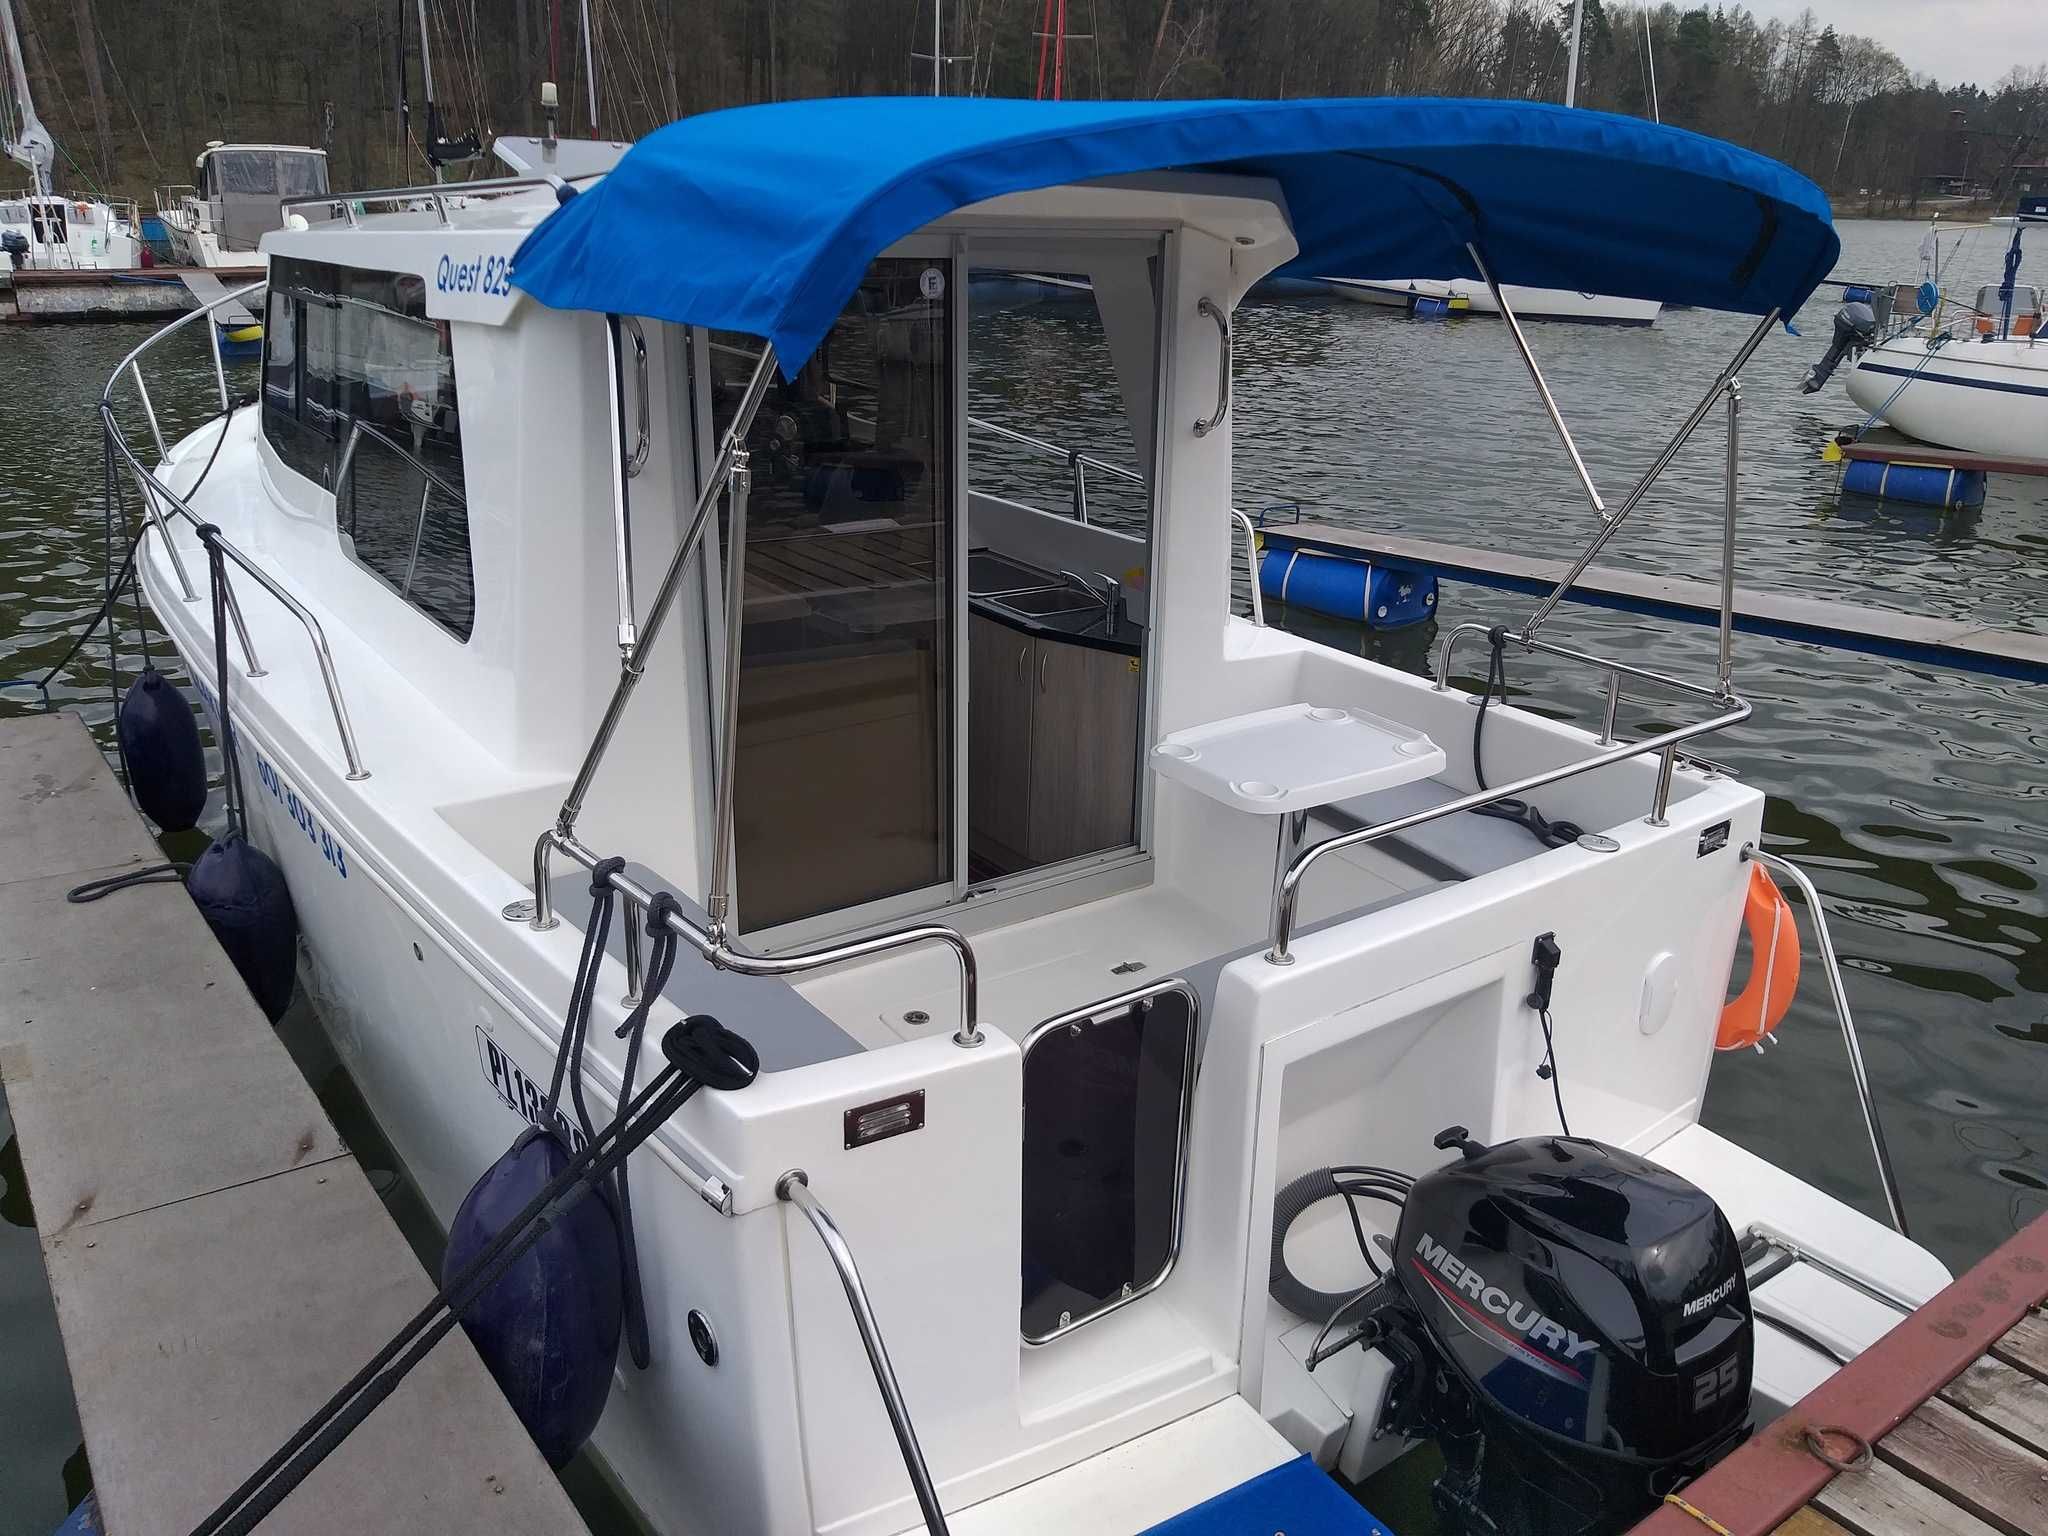 Czarter wynajem łódź Jacht motorowy Quest 825 Mazury bez patentu